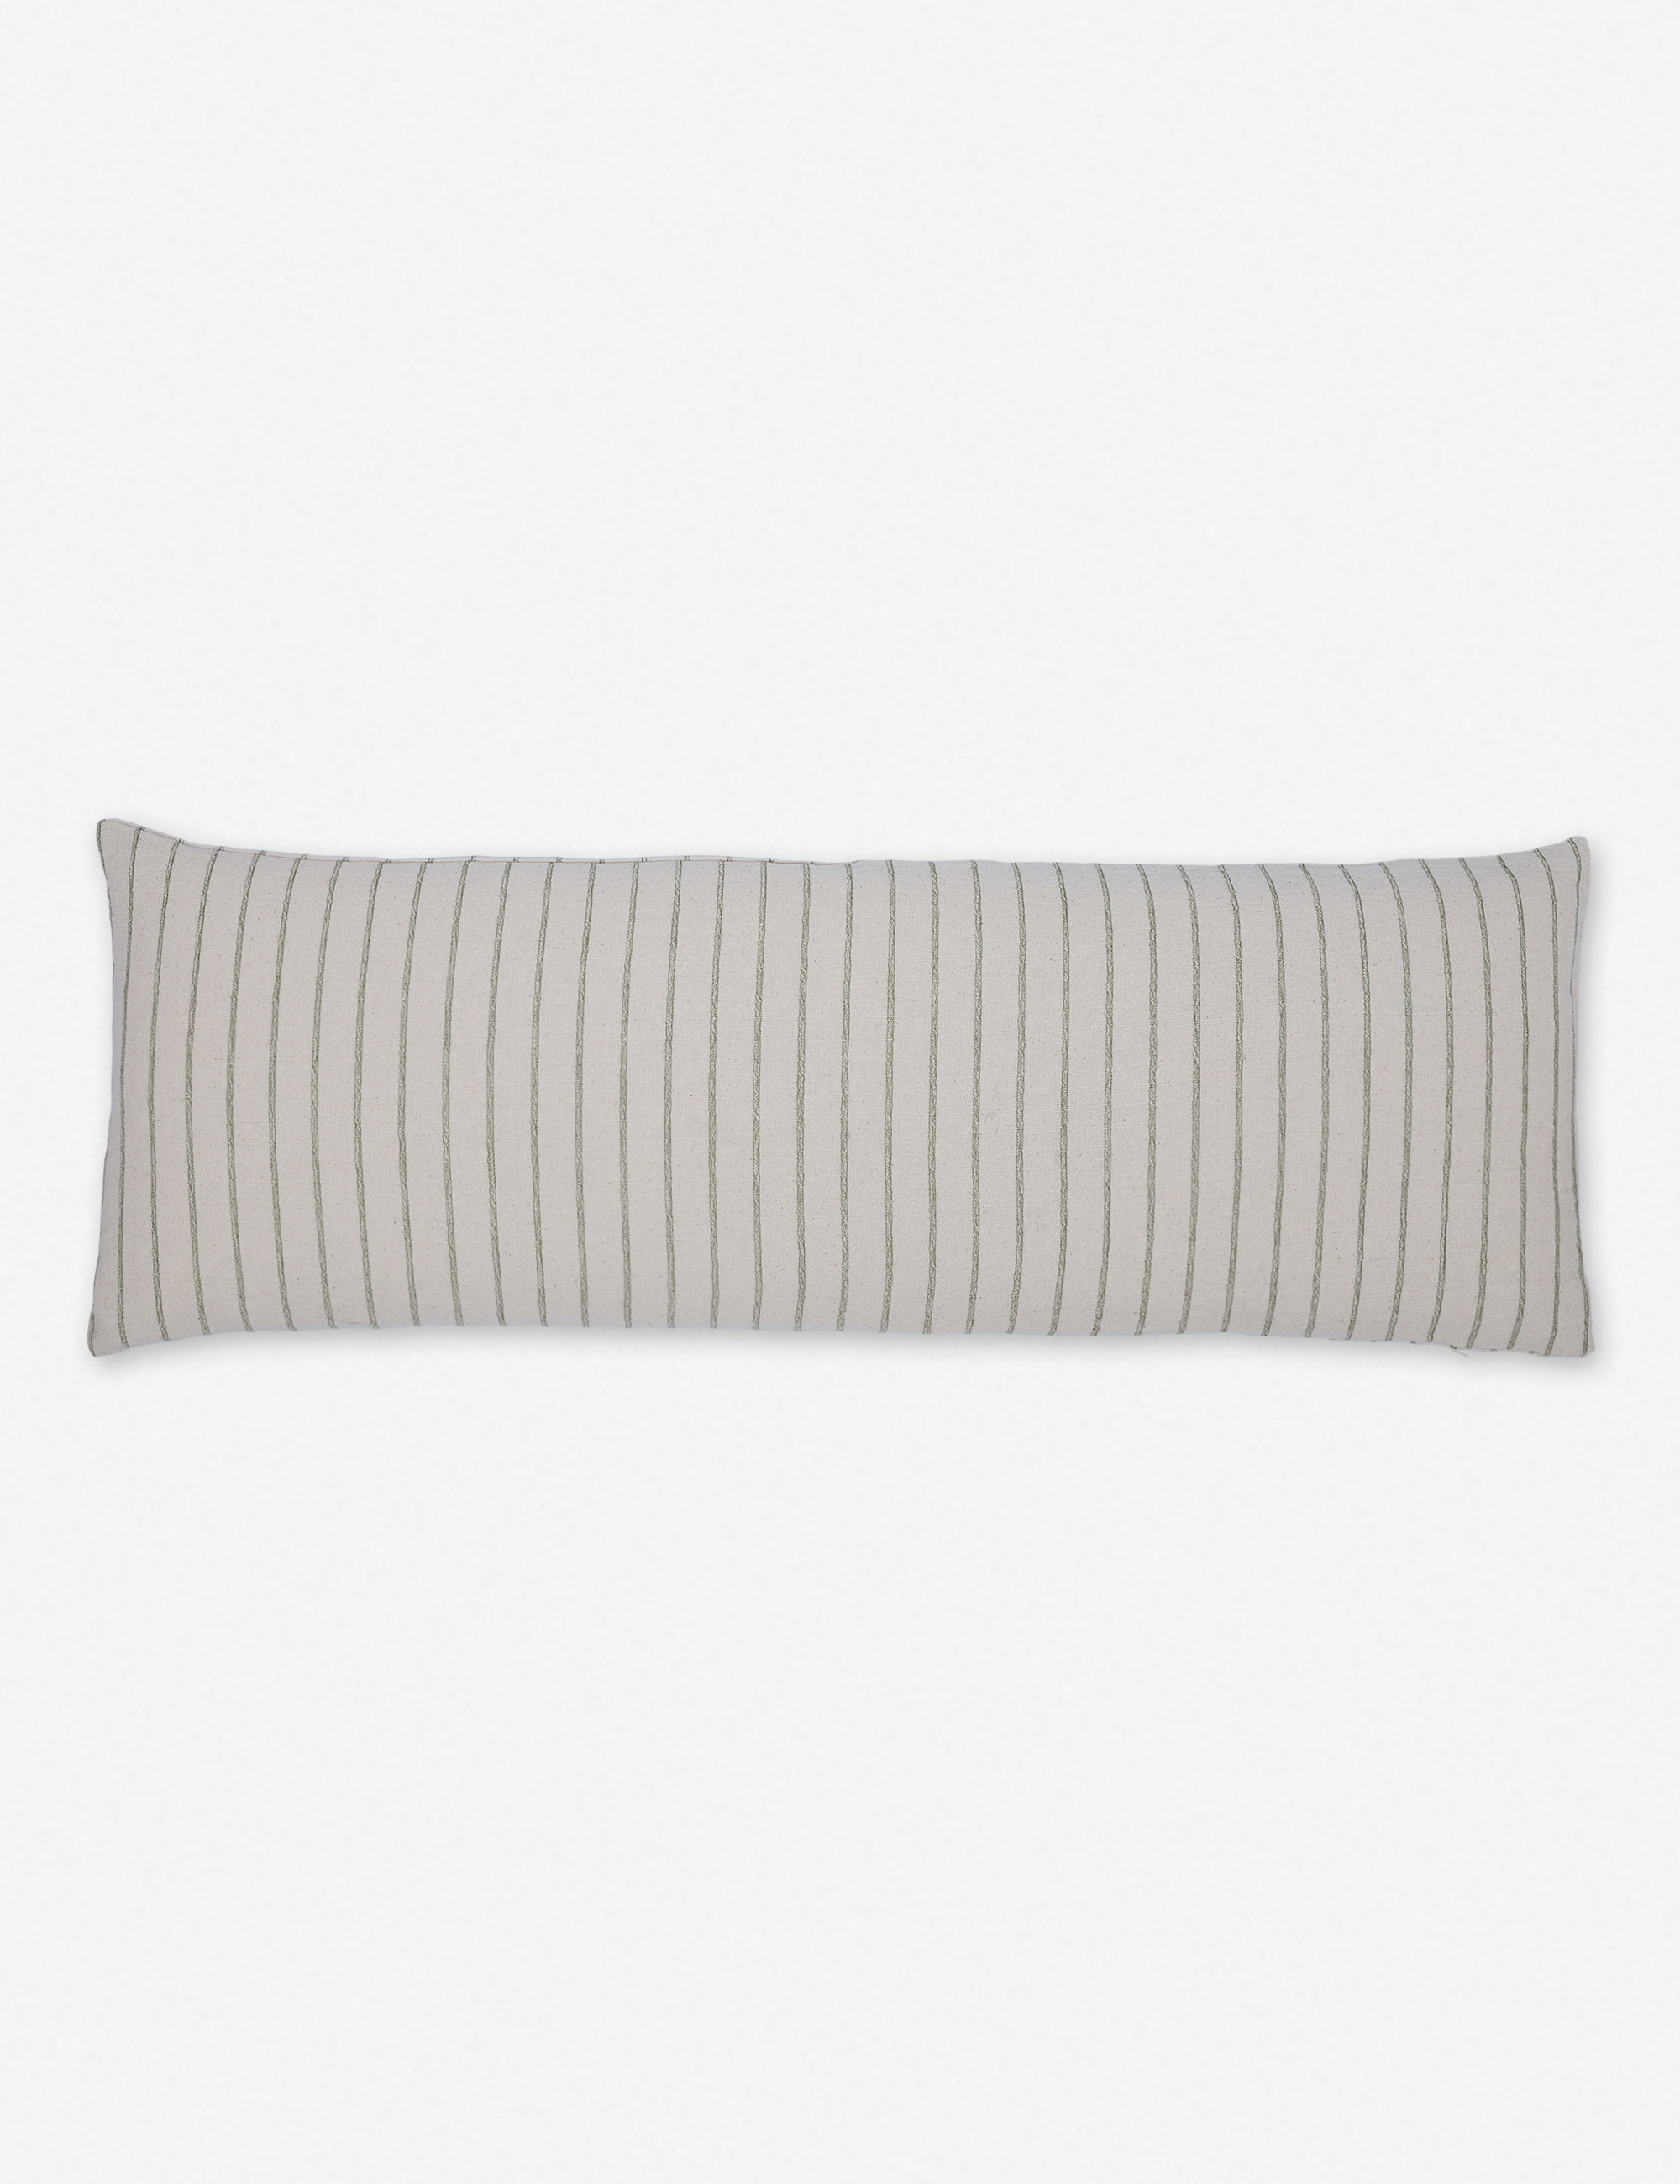 Ojai Long Lumbar Pillow, Moss, 16" x 24" - Image 0